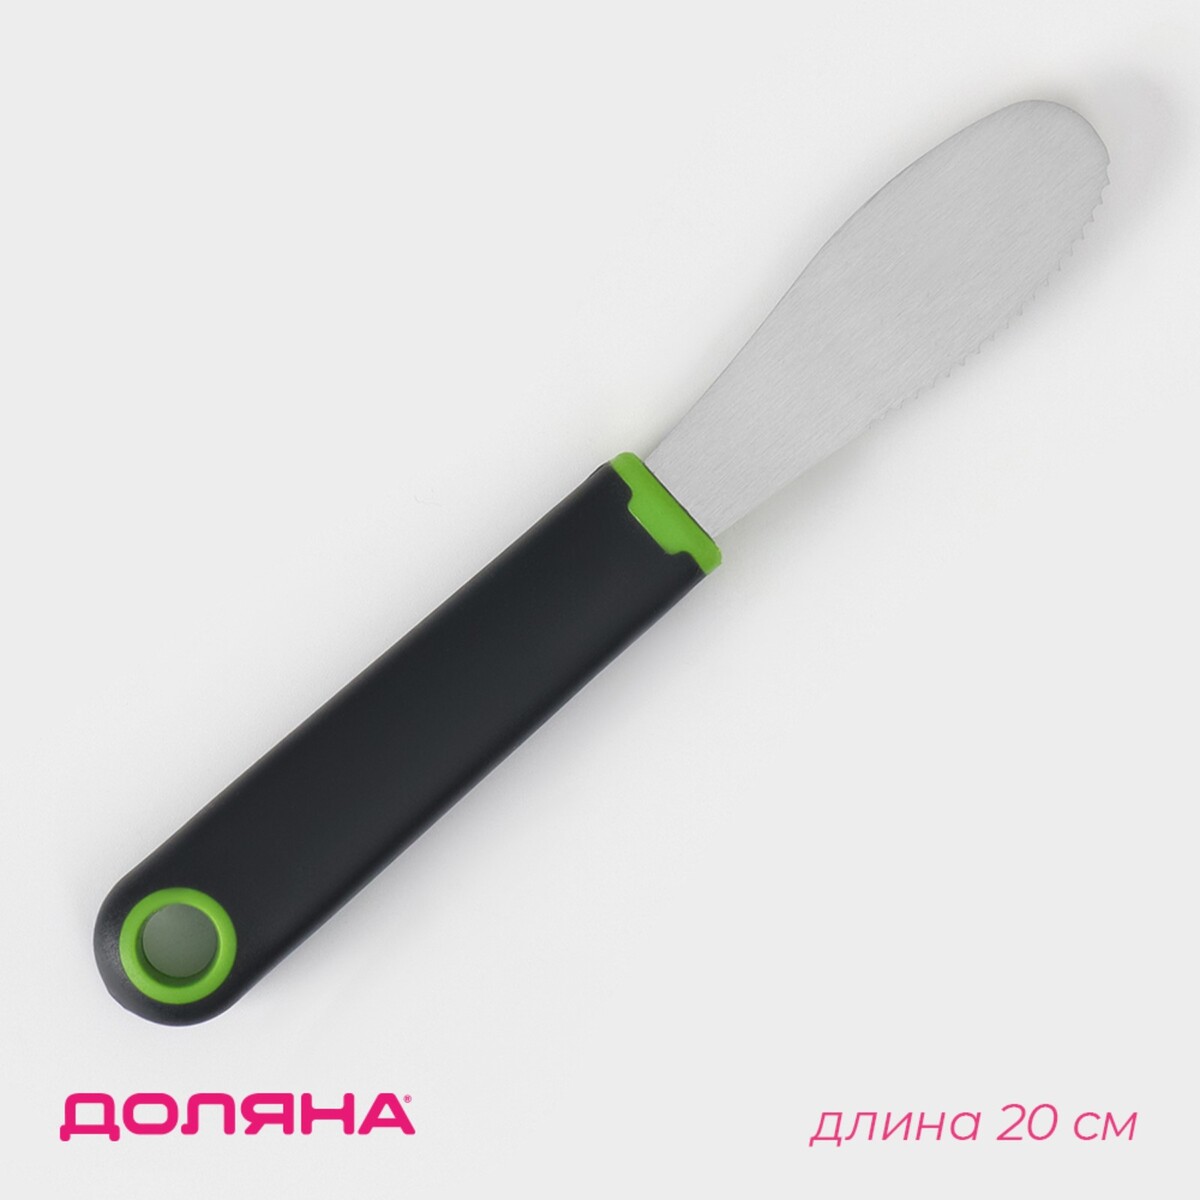 Нож для масла доляна lime, 20×3 см, цвет черно-зеленый нож для фигурной нарезки доляна lime 20 см нержавеющая сталь черно зеленый